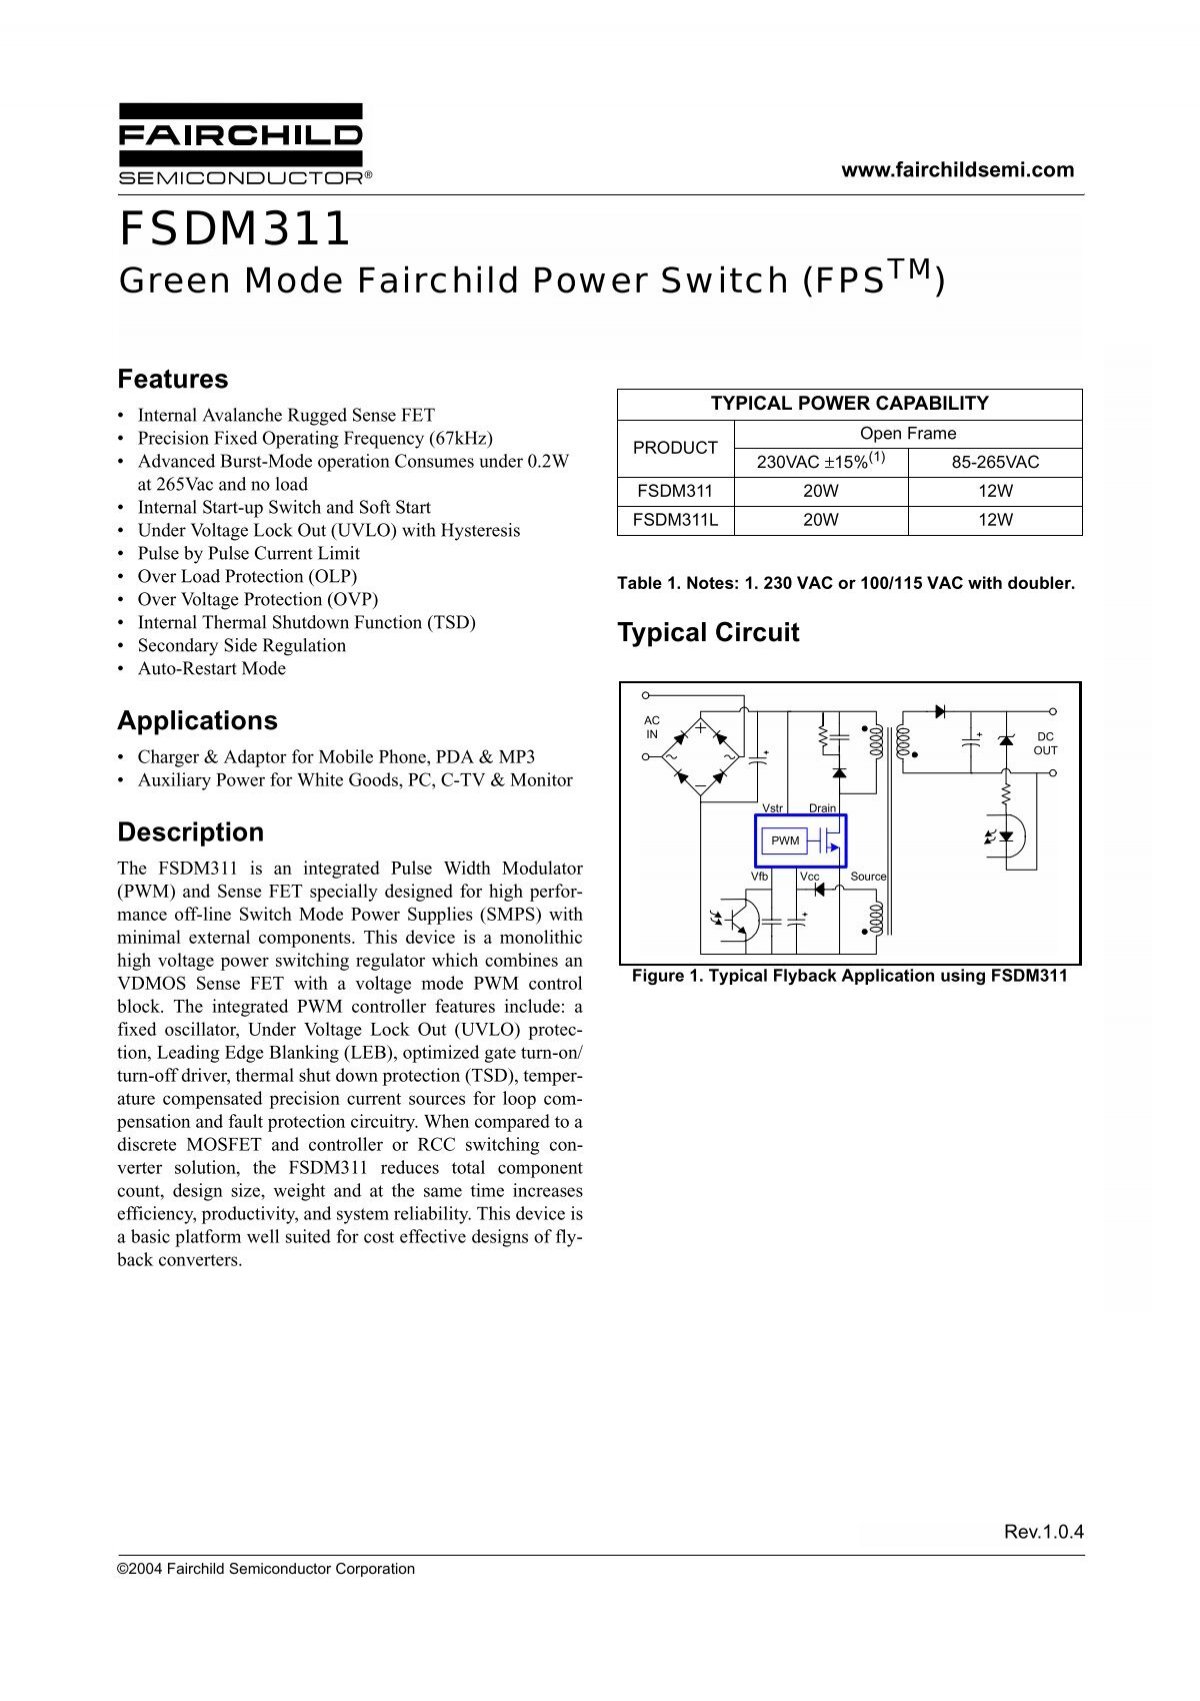 Fsdm311 Green Mode Fairchild Power Switch Fpstm